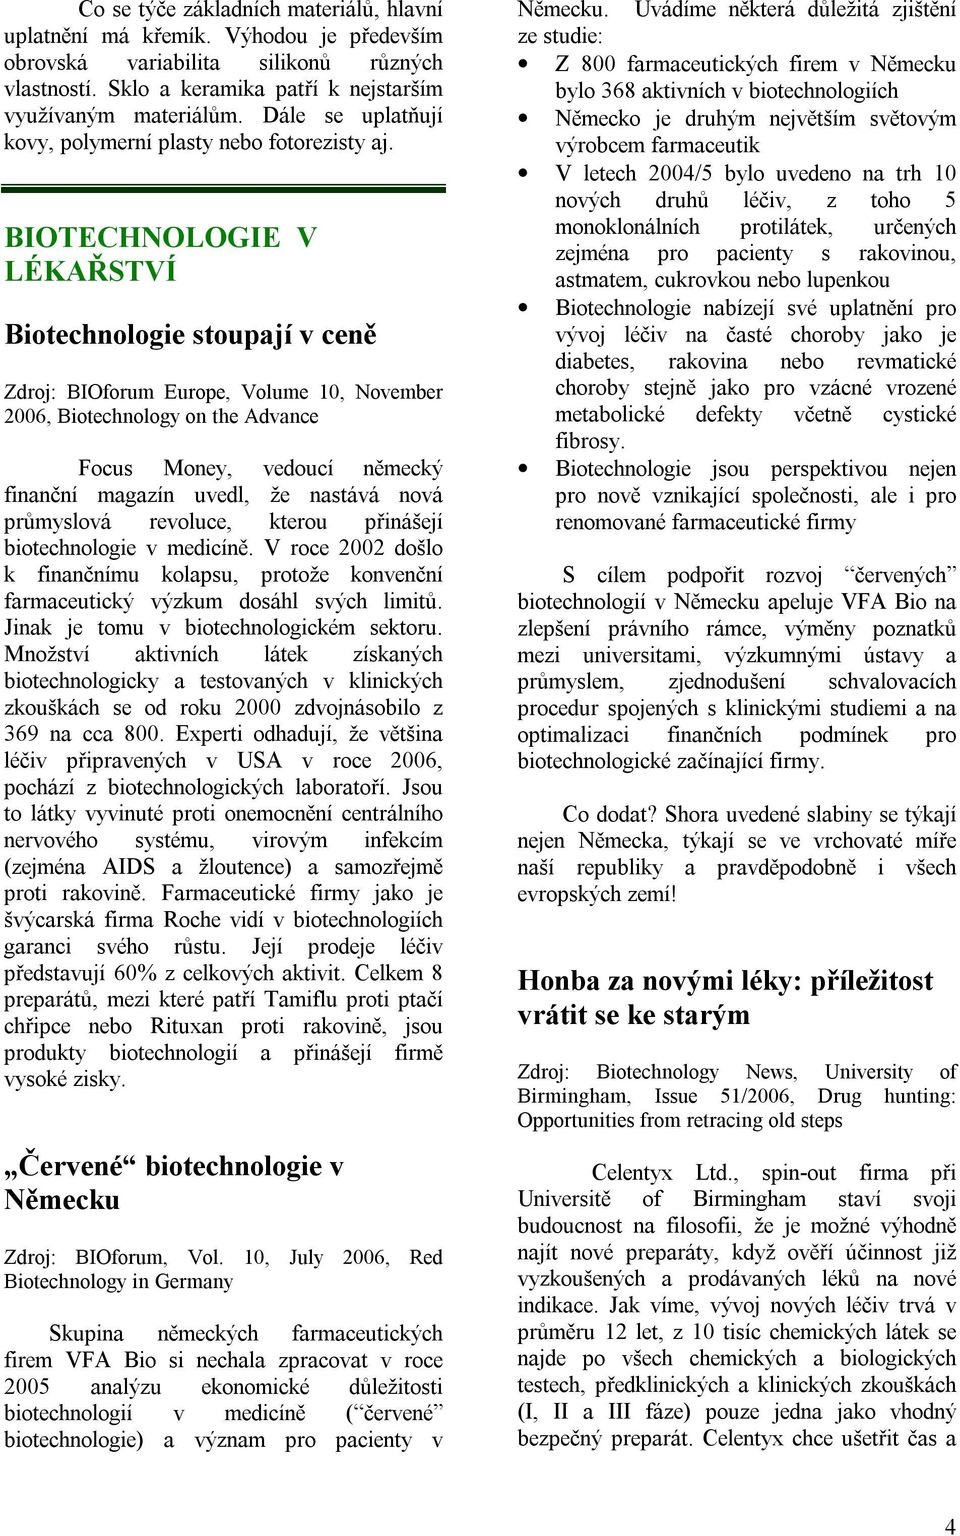 LÉKAŘSTVÍ Biotechnologie stoupají v ceně Zdroj: BIOforum Europe, Volume 10, November 2006, Biotechnology on the Advance Focus Money, vedoucí německý finanční magazín uvedl, že nastává nová průmyslová